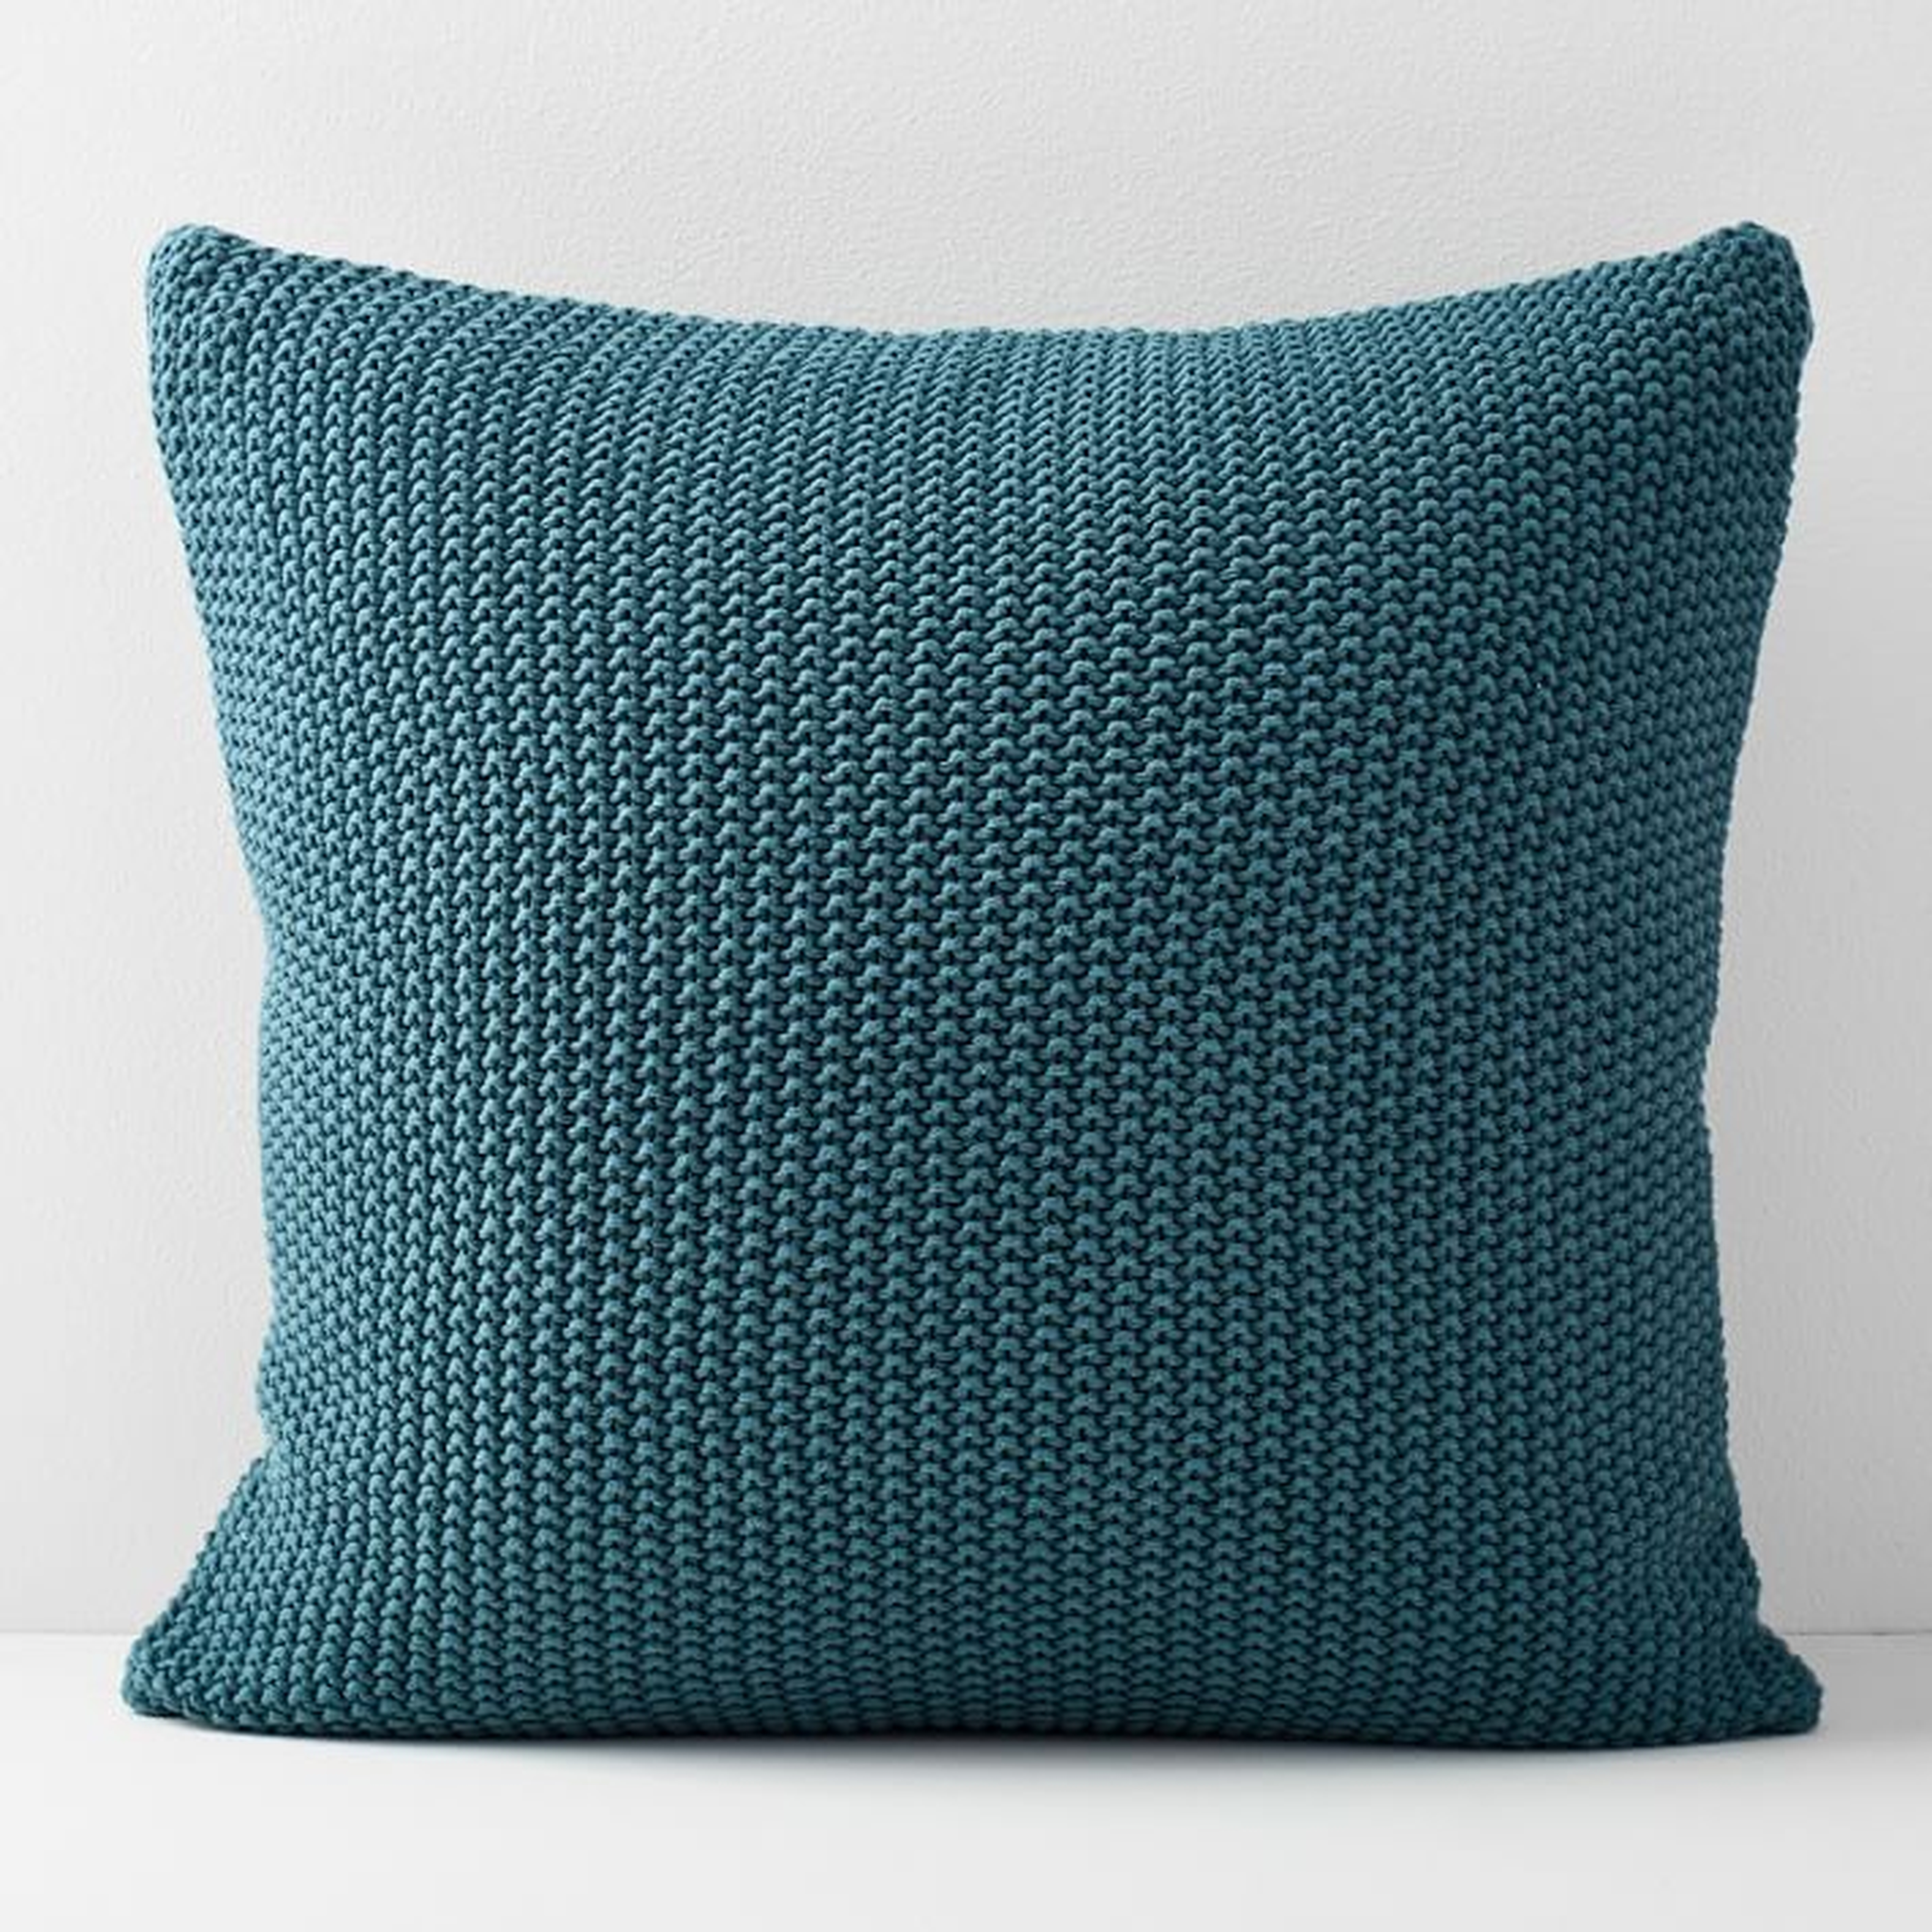 Cotton Knit Pillow Cover - West Elm